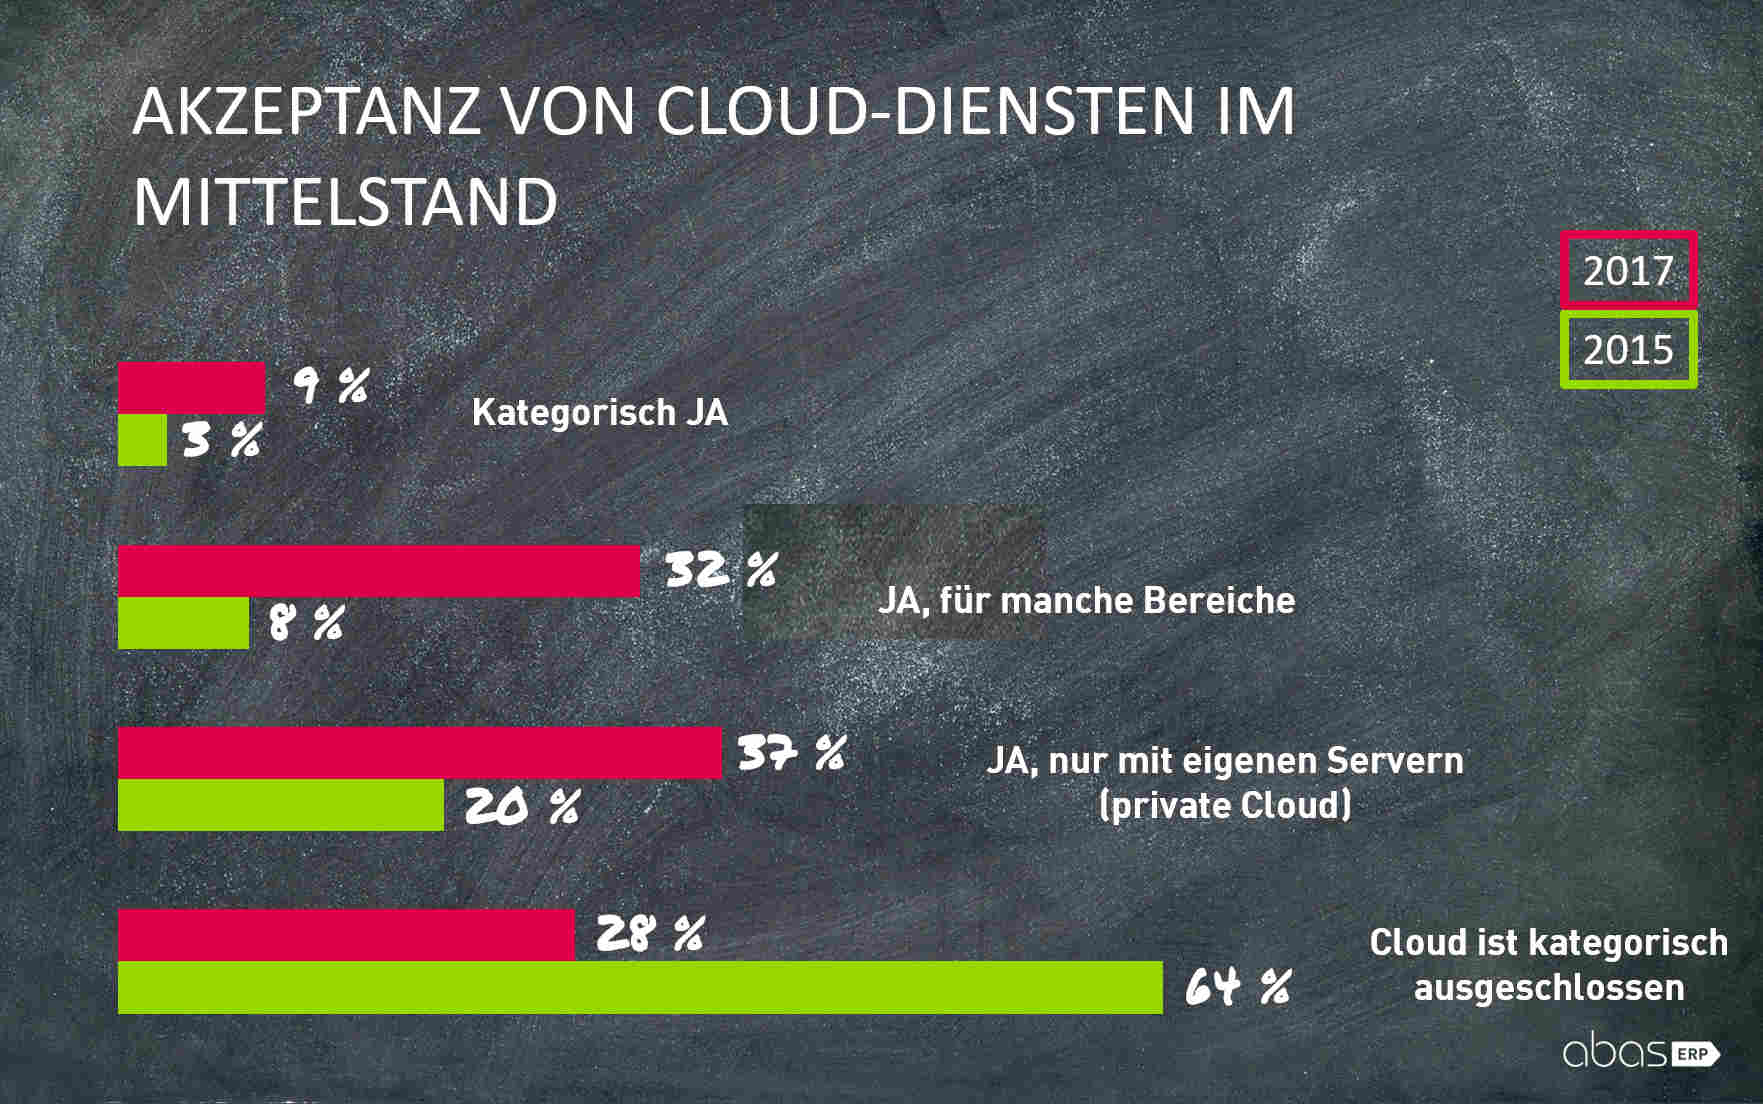 Akzeptanz von Cloud-Services | Grafik: abas